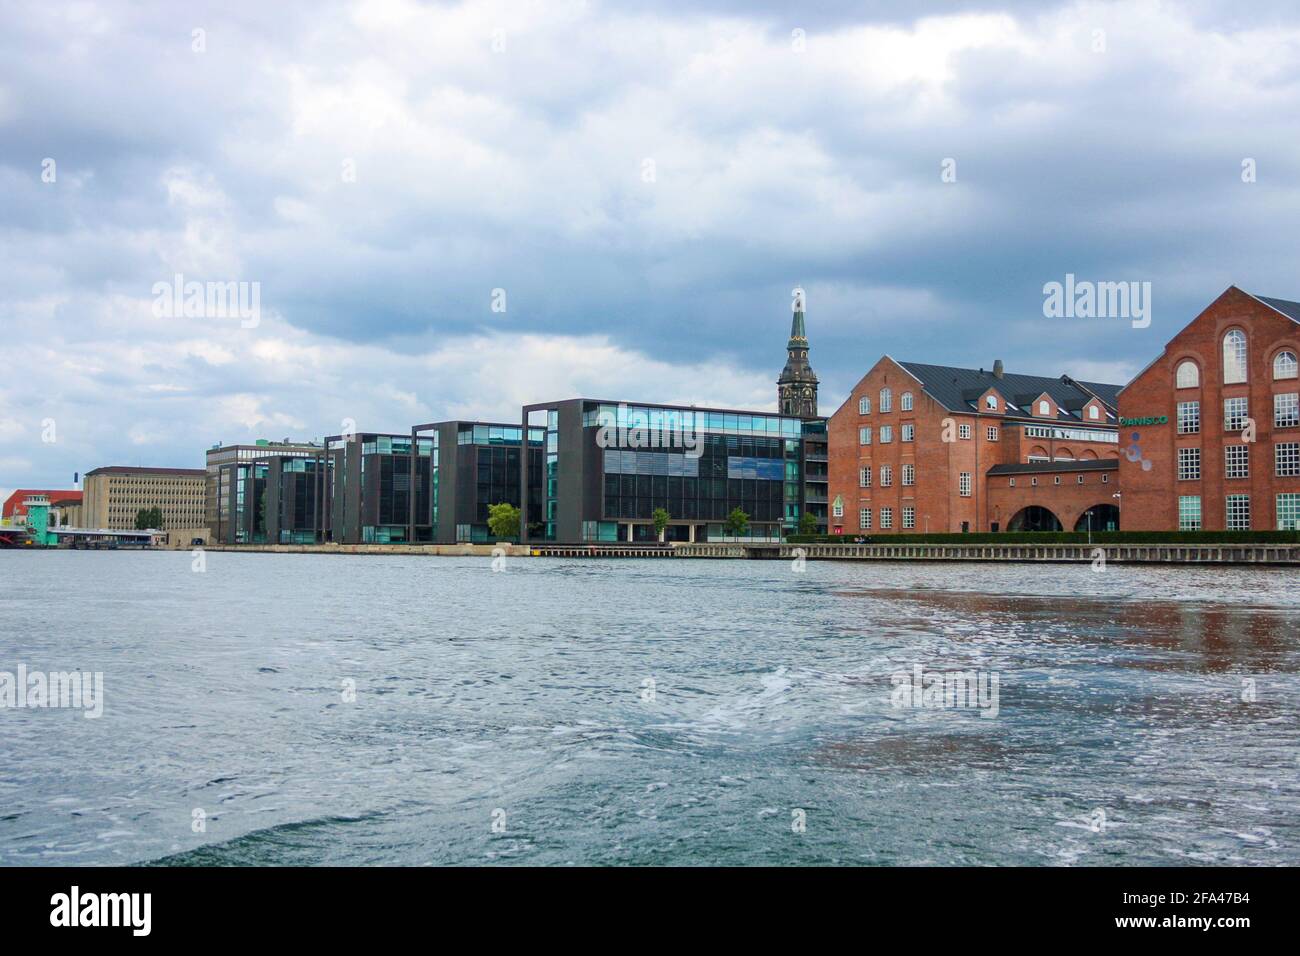 Blick auf Wohngebäude, einst ein Hafen, entlang des Hauptkanals in Kopenhagen, Dänemark Stockfoto